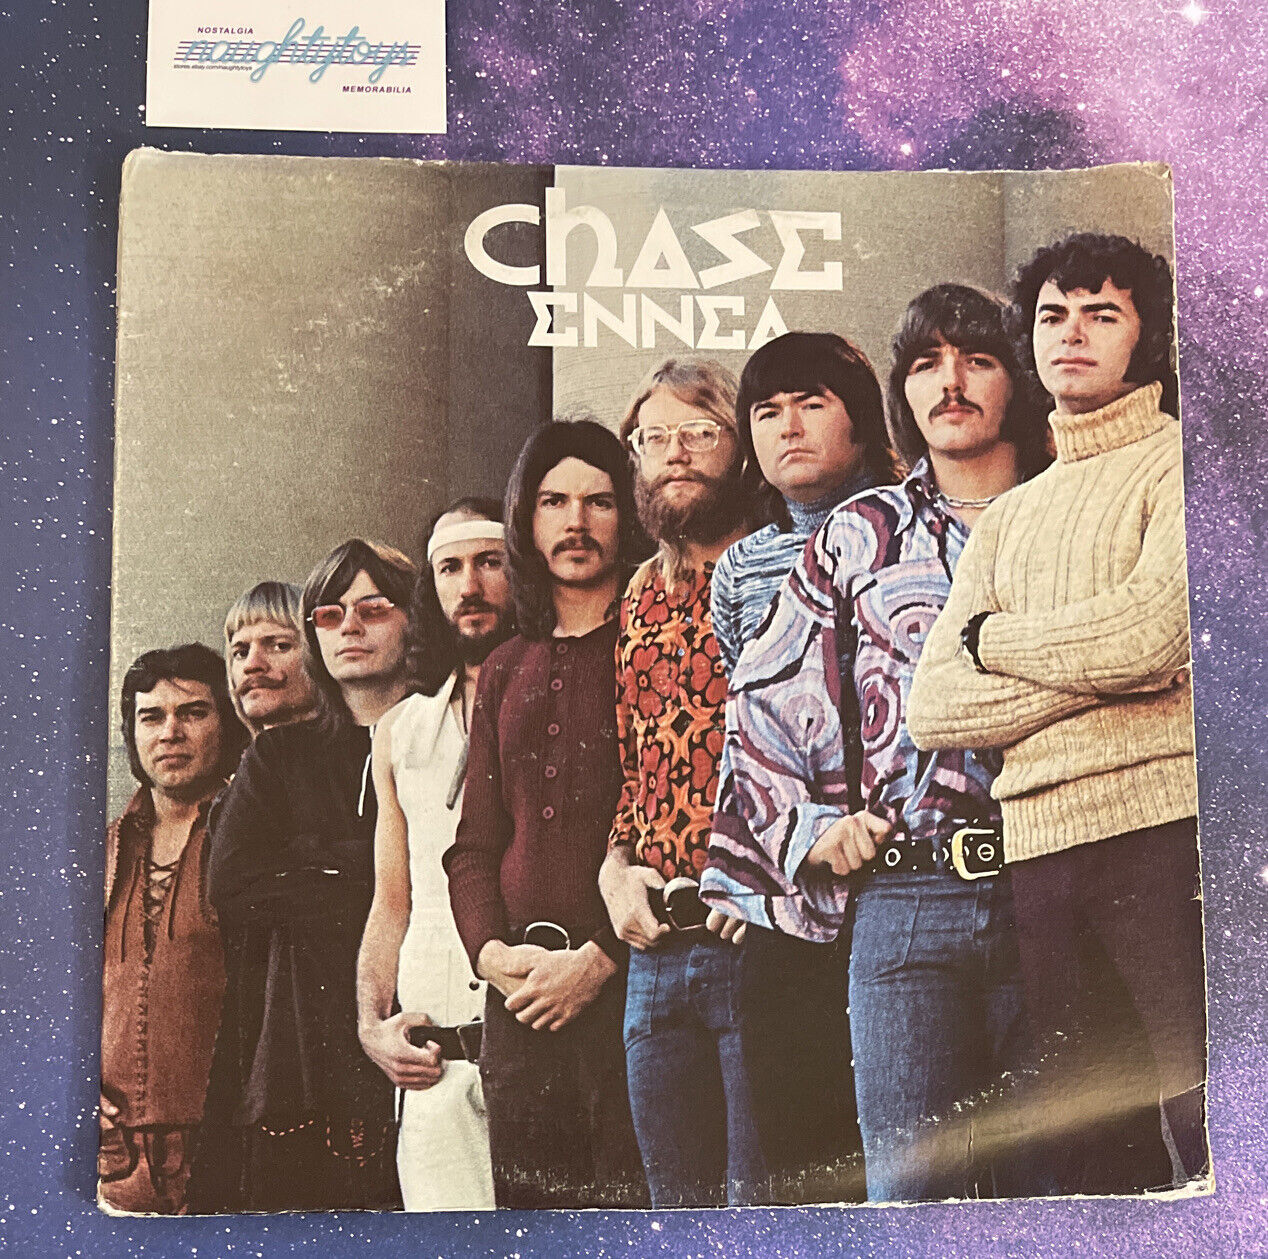 Vtg CHASE - ENNEA - Original 1972 PRESS LP KE 31097 Jazz Rock Fusion 70’s